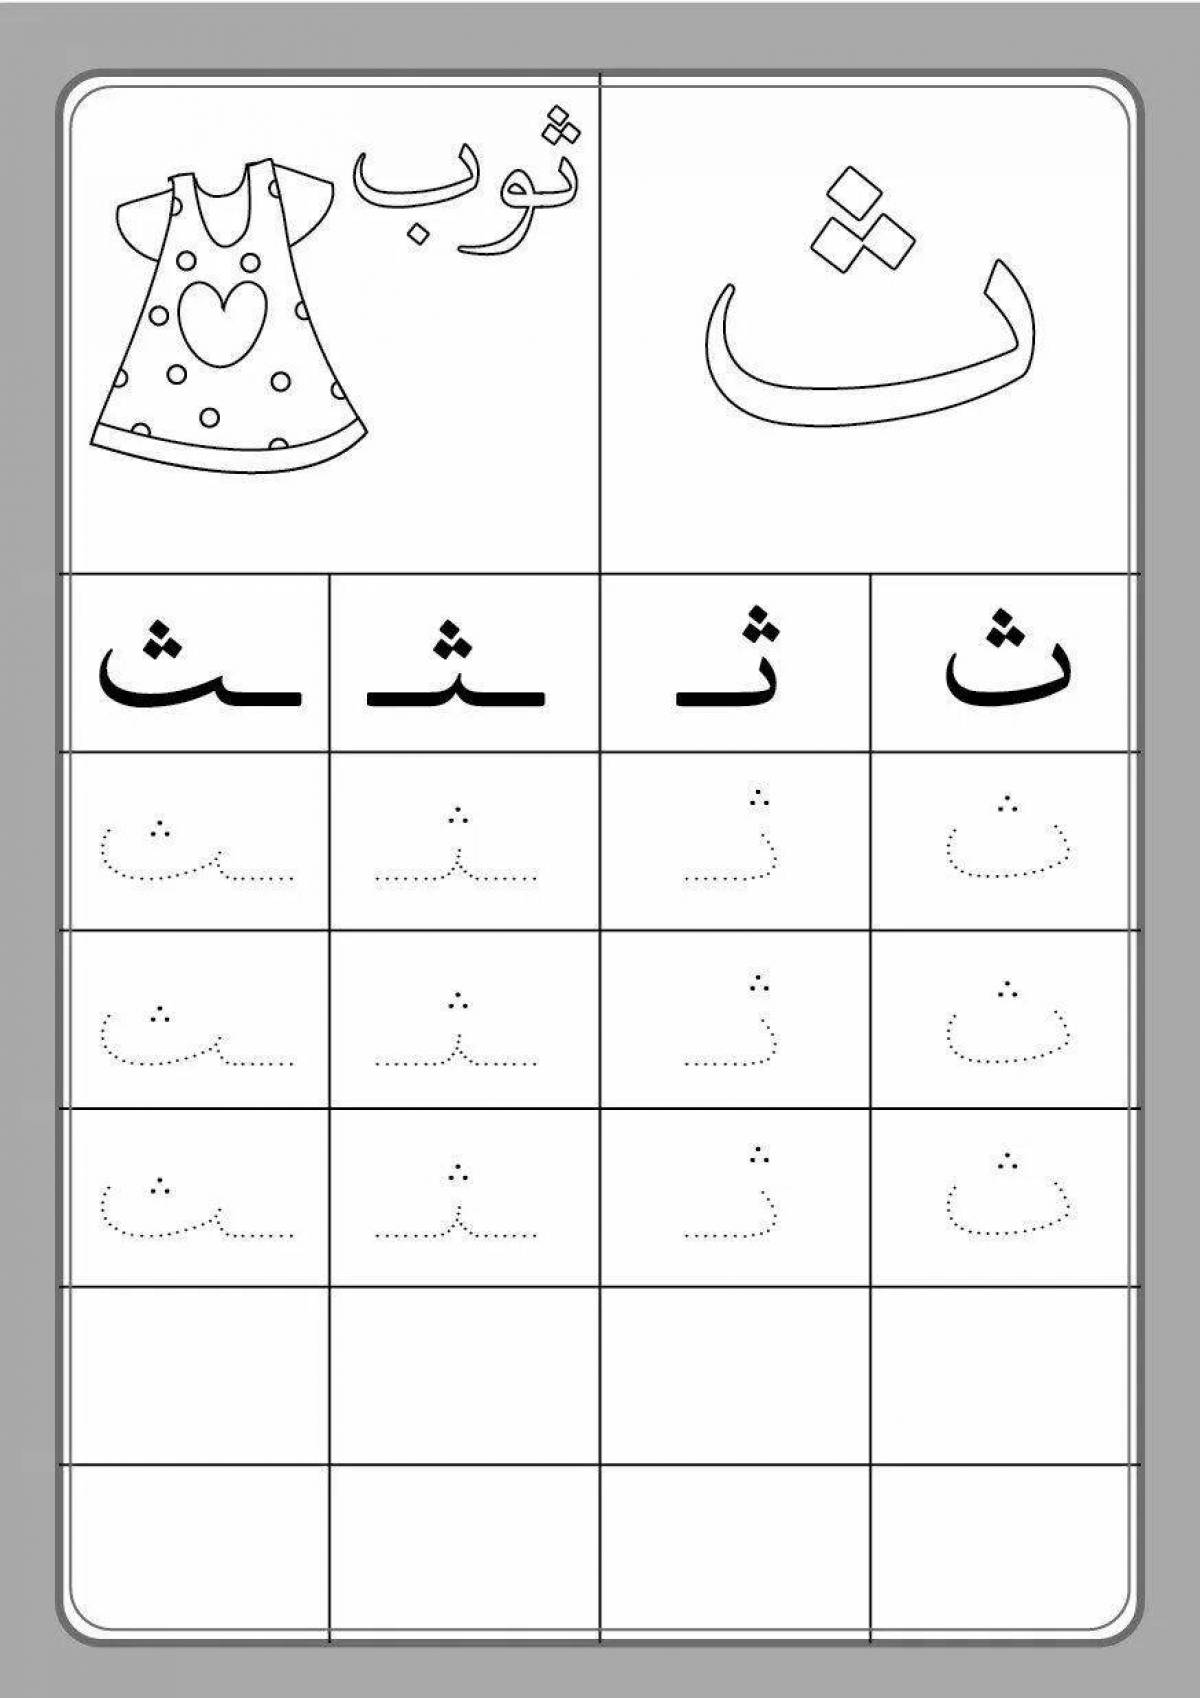 Красочная страница-раскраска арабского алфавита для новичков